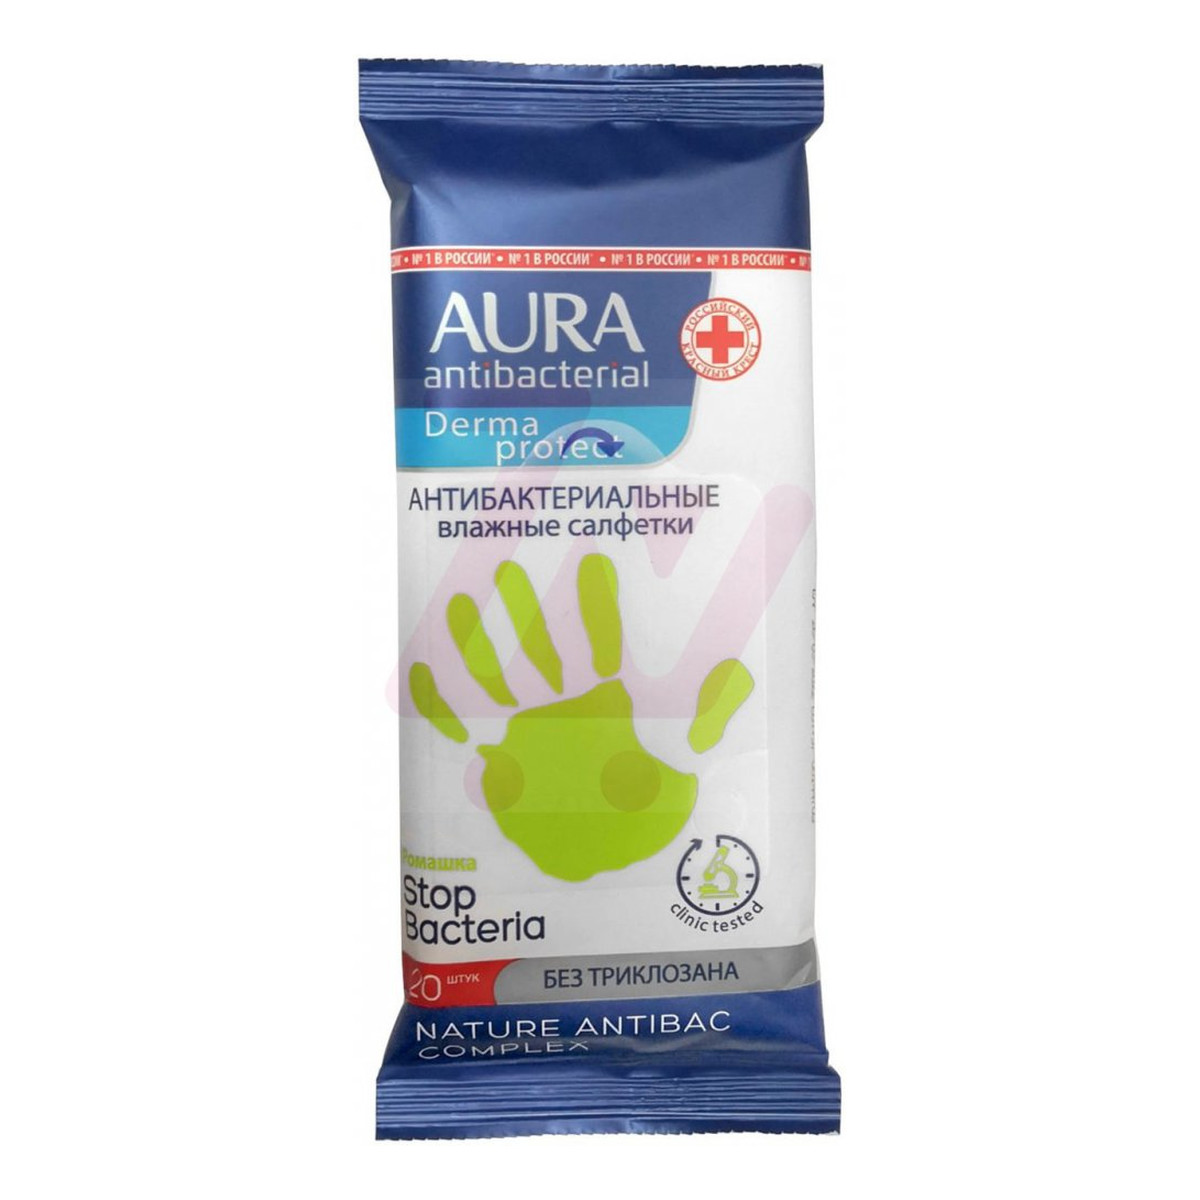 Aura Antibacterial Derma Protect nawilżane chusteczki oczyszczające antybakteryjne 20 szt.